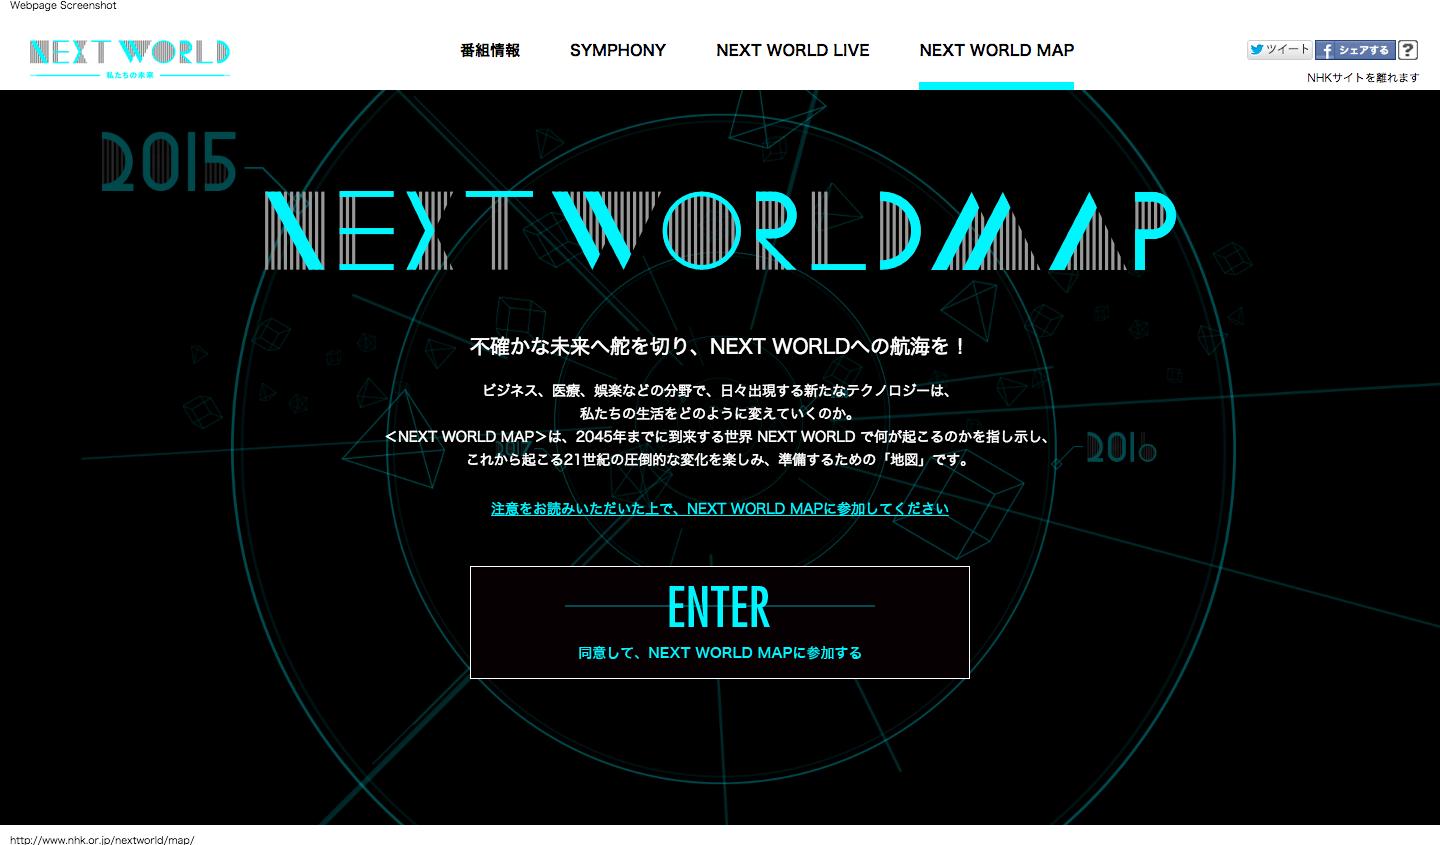 Next World: Watashitachi no mirai